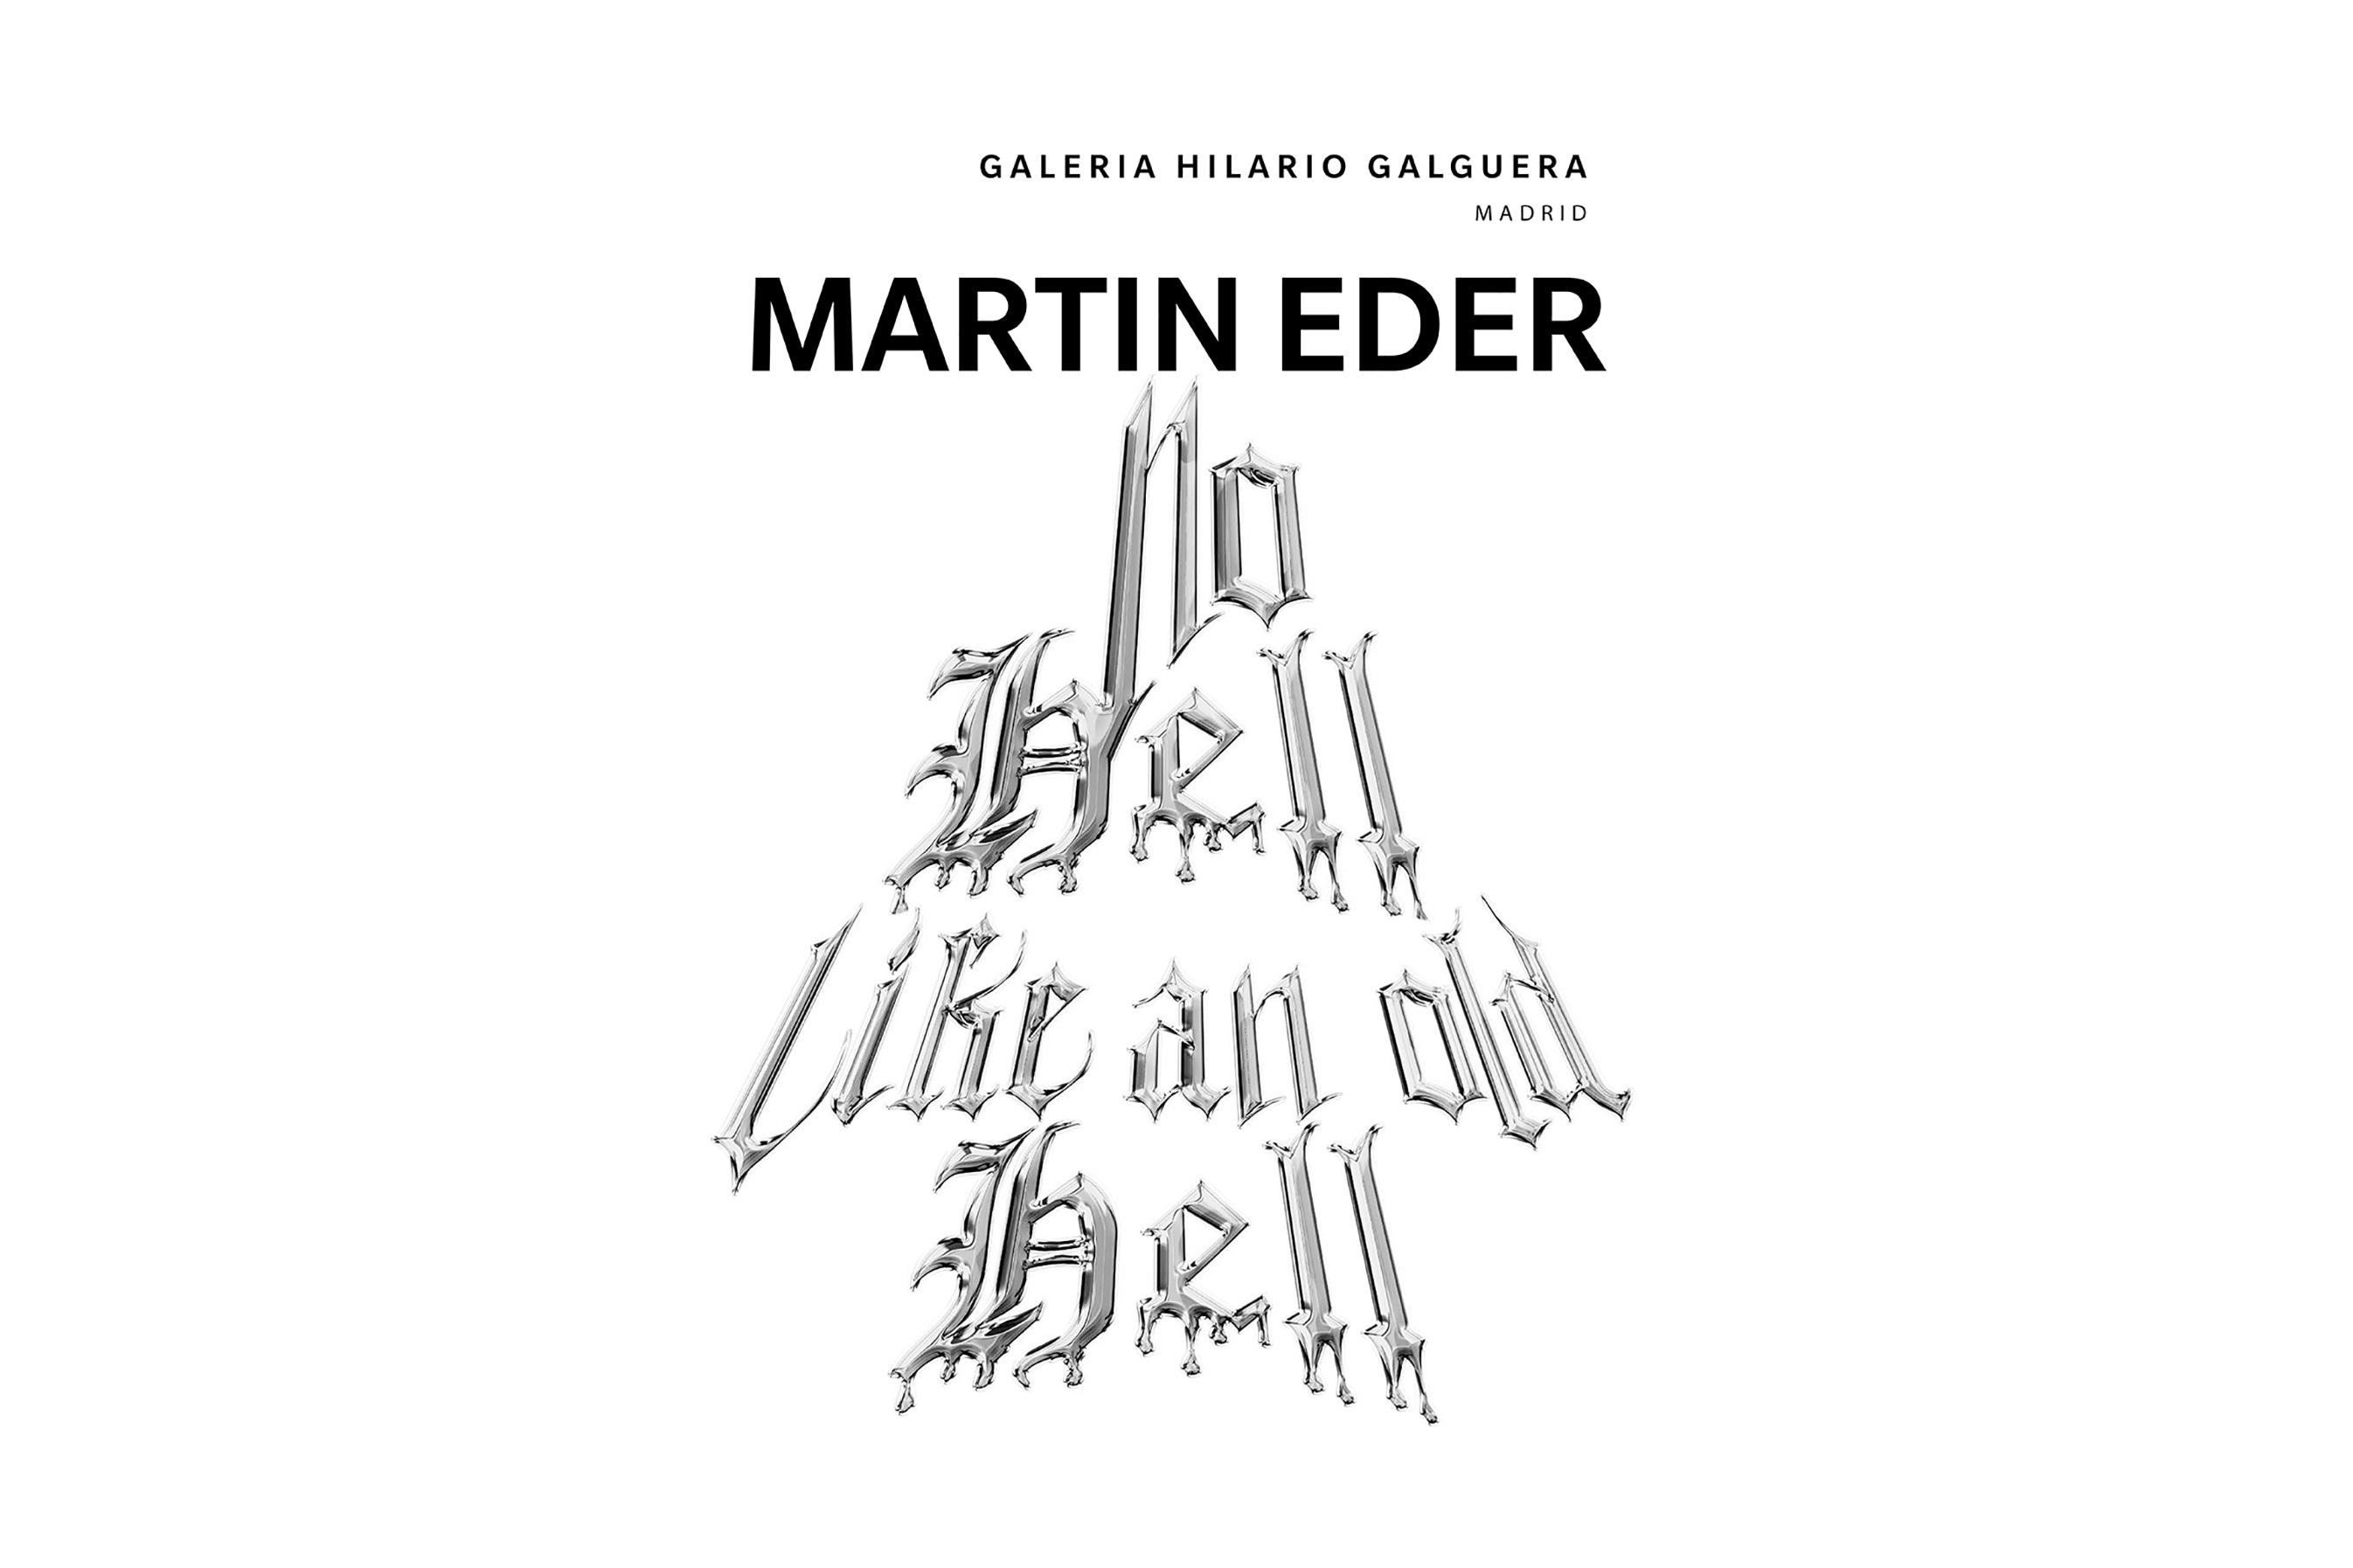 ME_Invitación-Martin-Eder—GHG-Mad-Dig_1